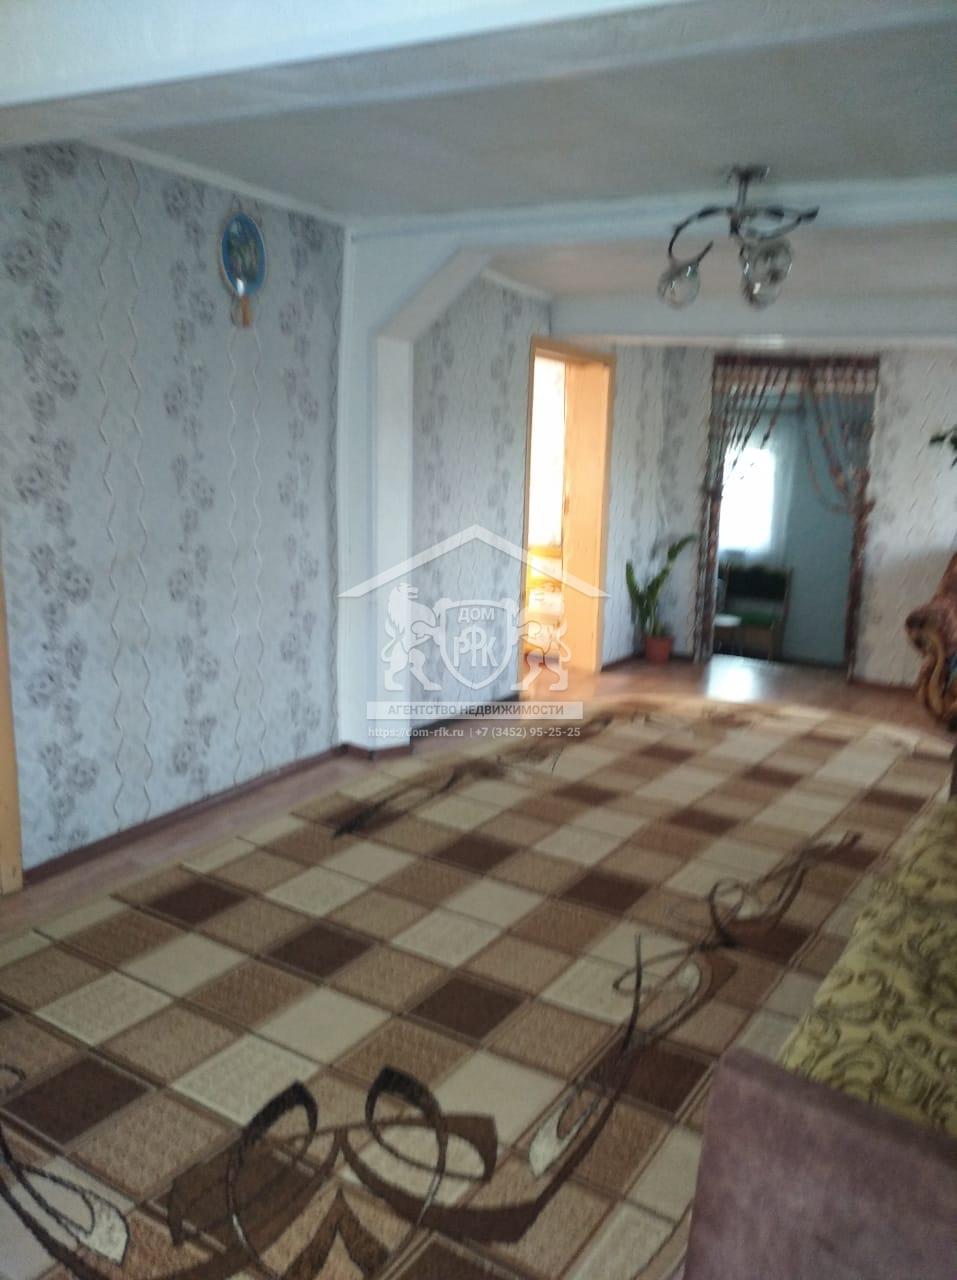 Продается дом 65 кв.м. Тюменская область, Сорокинский район, с. Готопутово